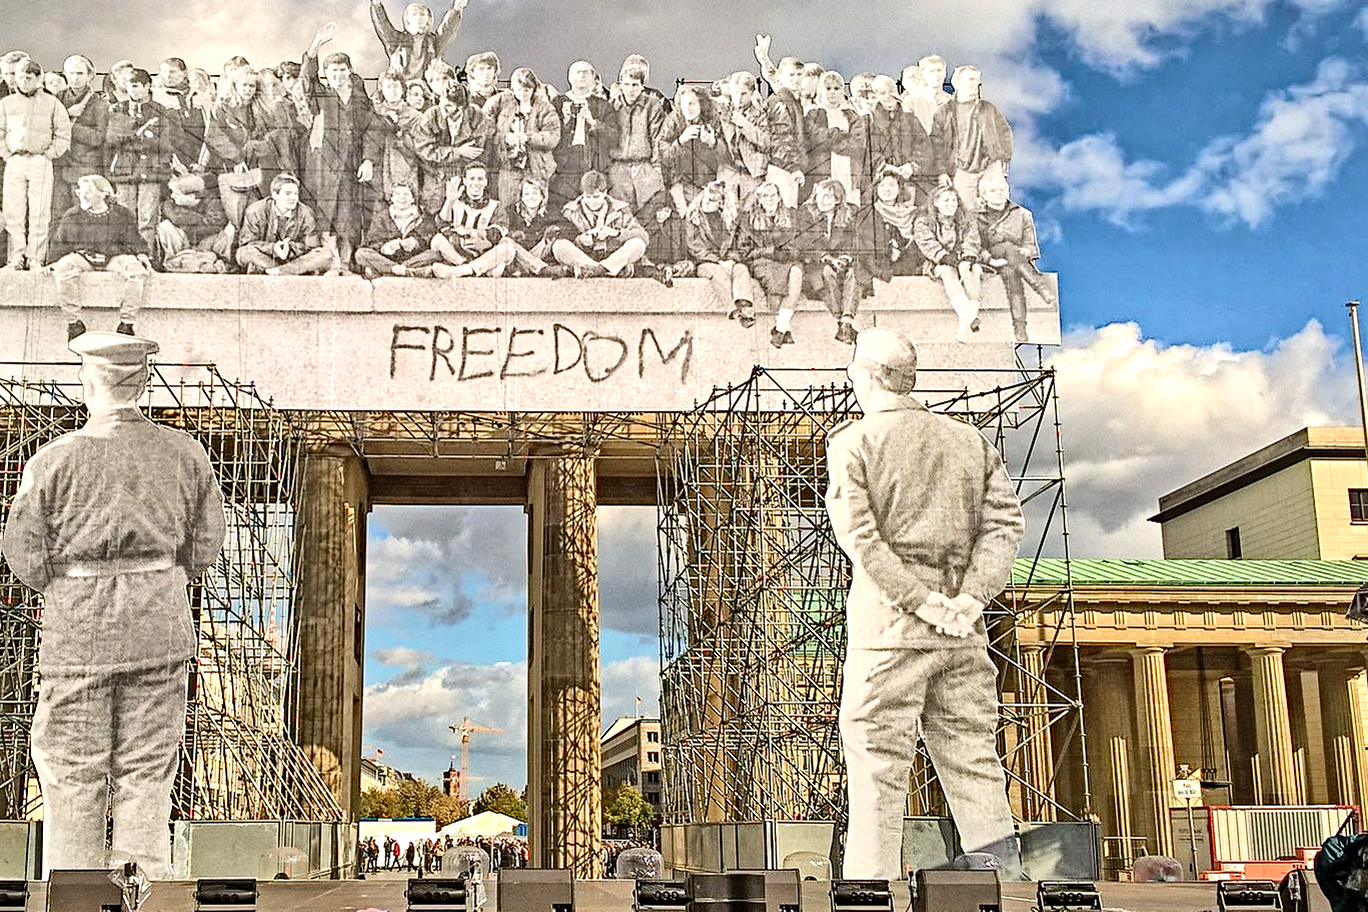 Eine Installation am Brandenburger Tor macht Wandel und Veränderung deutlich. Mittels Gerüsten sind Bilder vor das Tor montiert. Oben auf dem Tor sind Menschen zu sehen, die auf der Berliner Mauer sitzen. Vor dem Tor stehen Grenzsoldaten, die auf die Mauer blicken. Und der Blick des Betrachters führt durch das offene Tor durch.